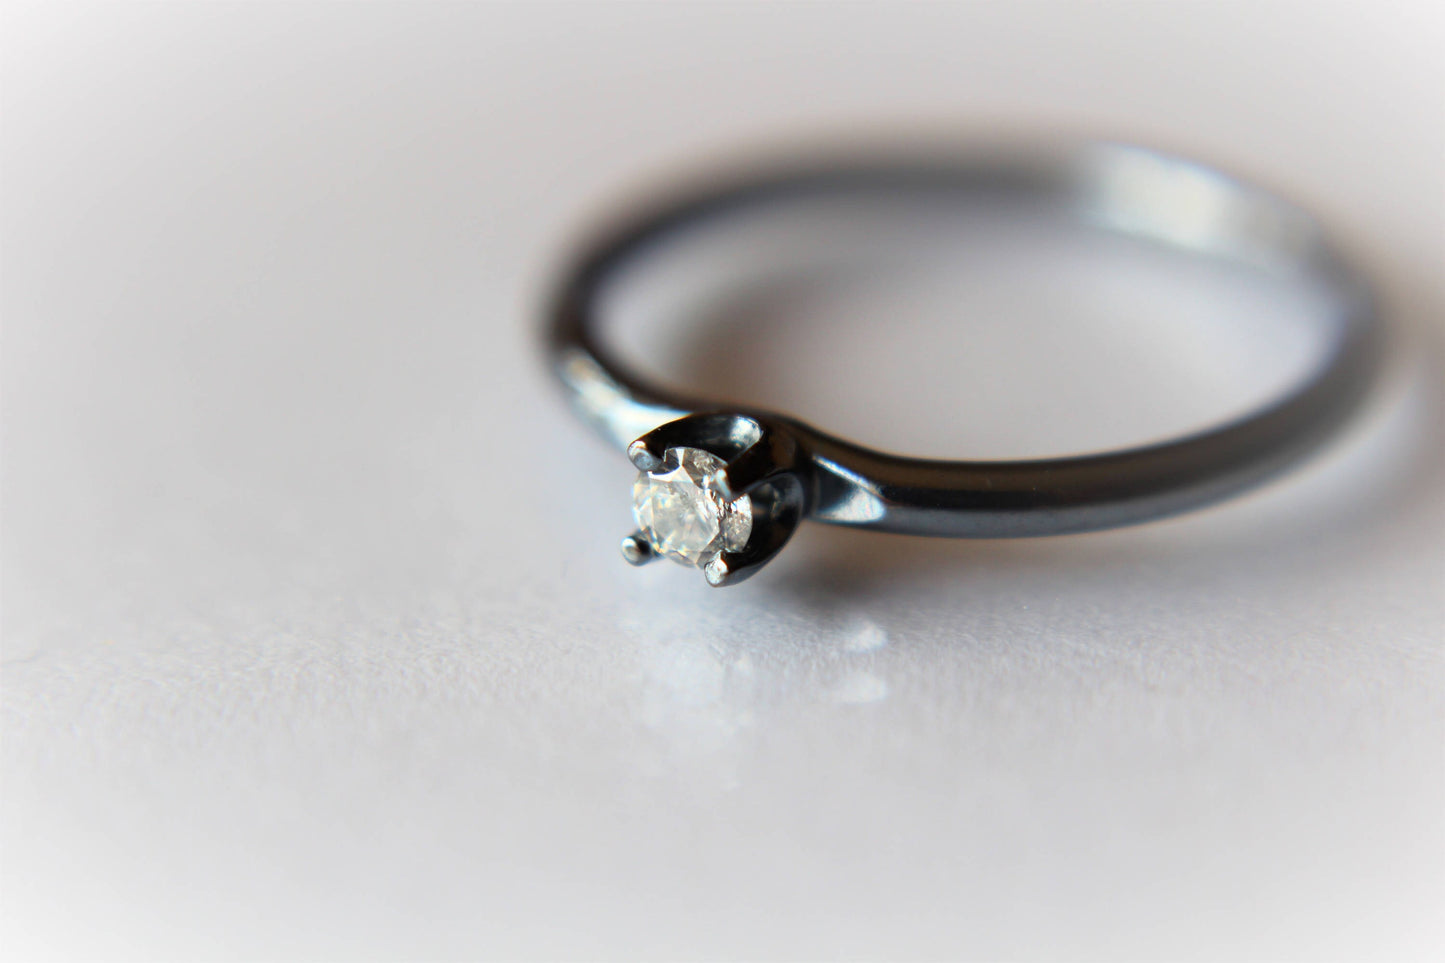 Diamond Ring, Genuine White Diamond Ring, White Diamond, Simple Diamond Ring, Minimal, Gift, April Birthstone Ring, Tiny Diamond Ring